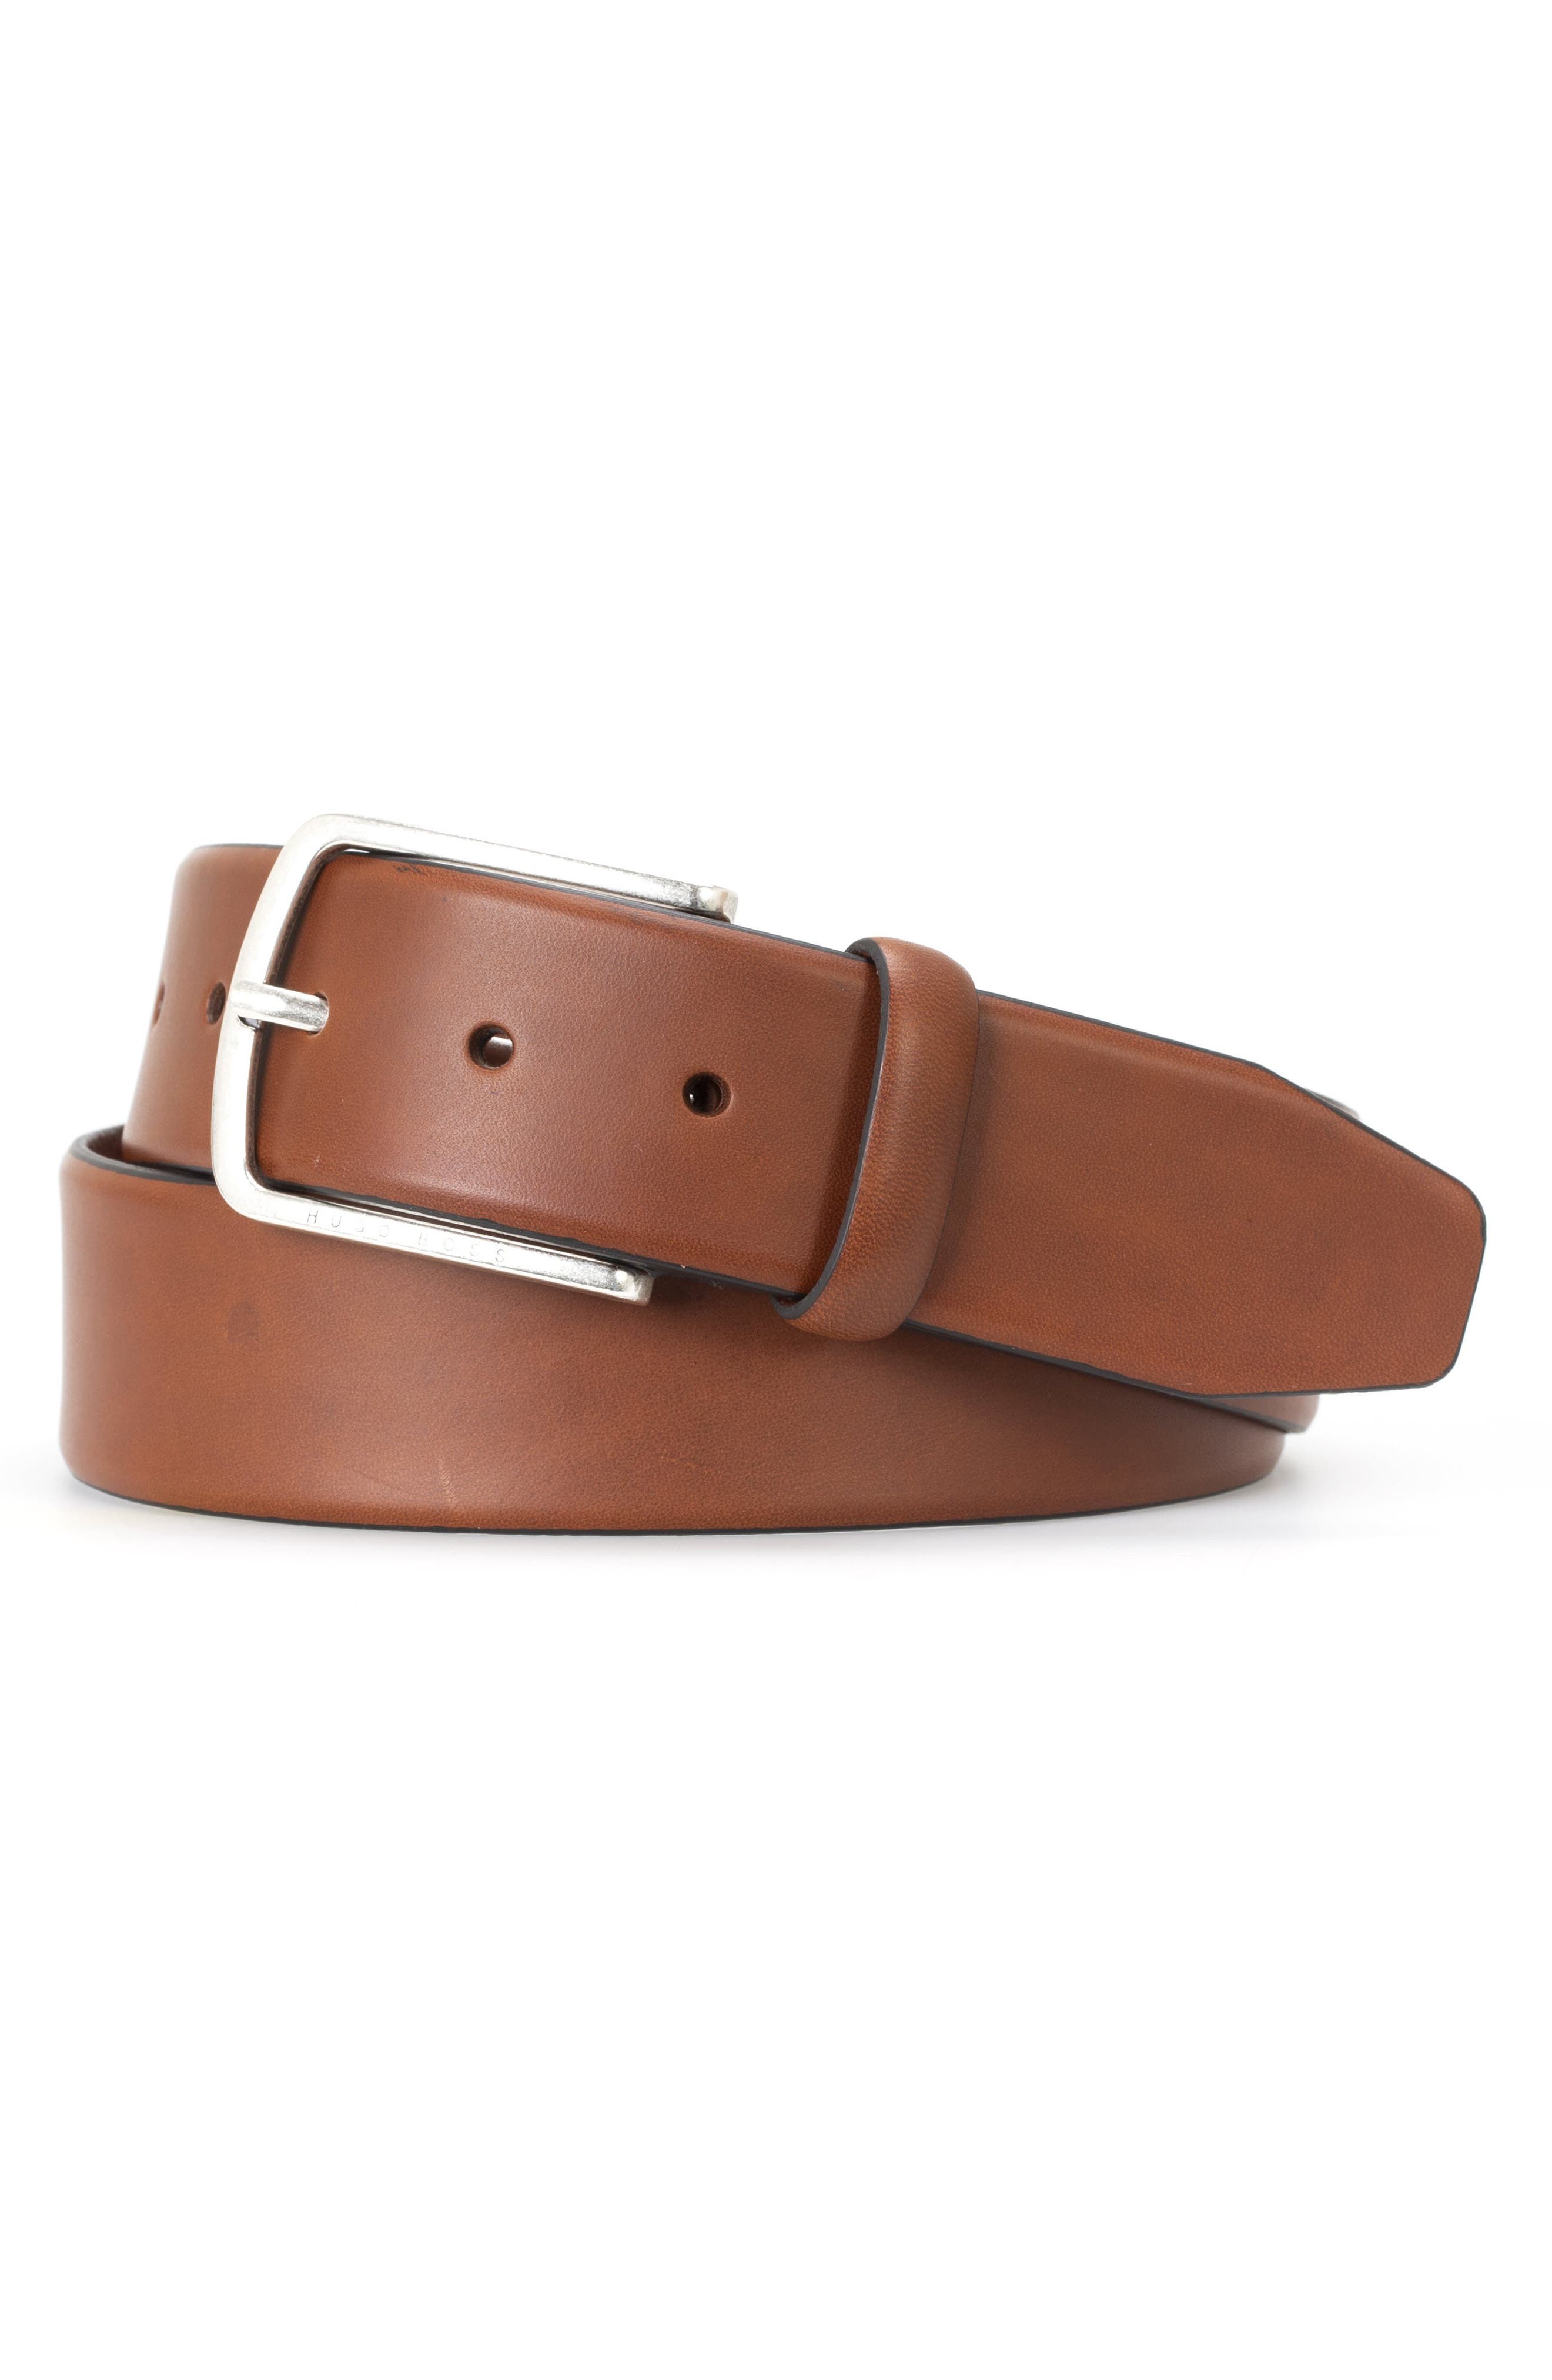 HUGO Sander Leather Belt in Medium Brown at Nordstrom, Size 34